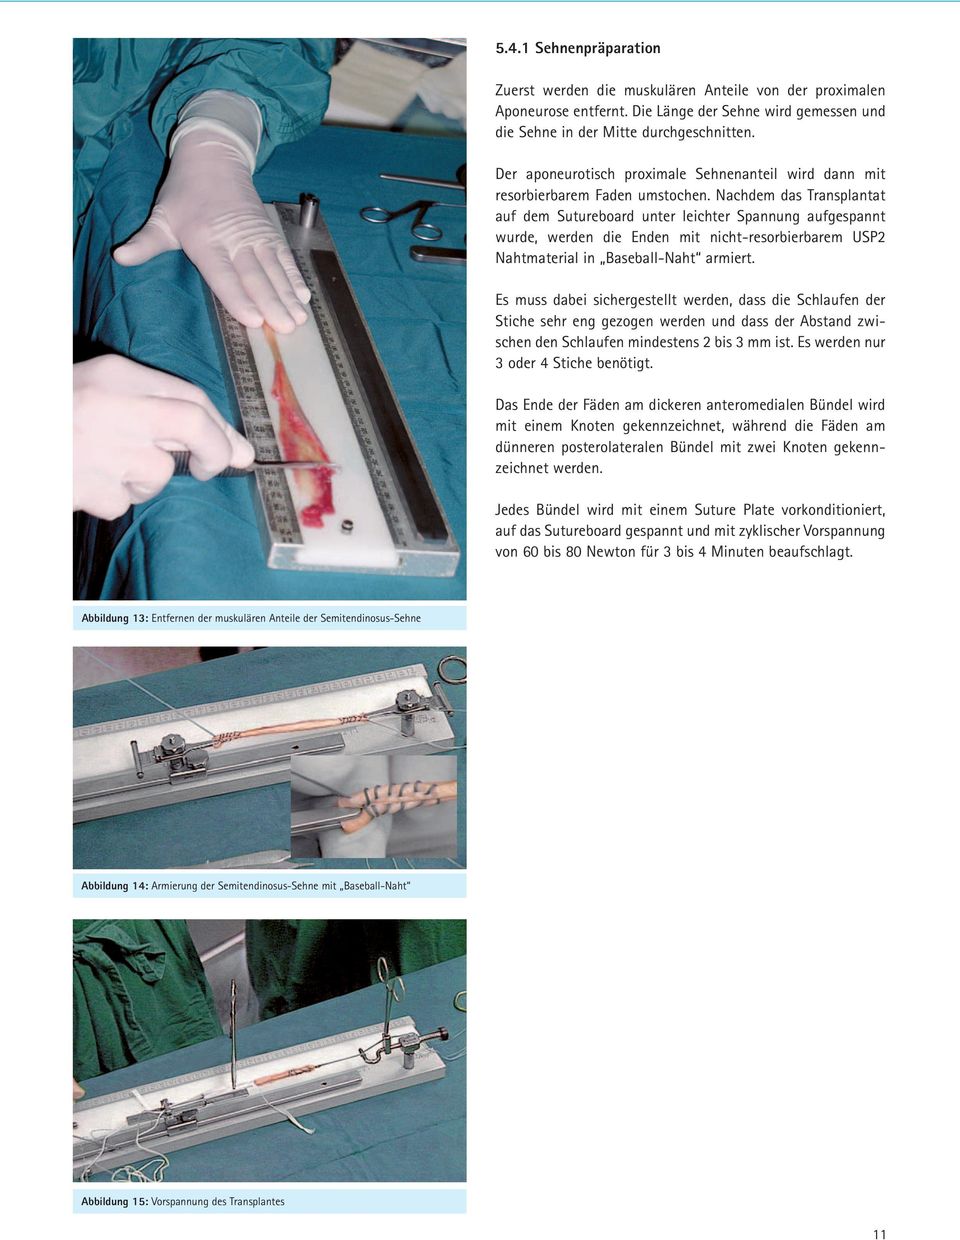 Nachdem das Transplantat auf dem Sutureboard unter leichter Spannung aufgespannt wurde, werden die Enden mit nicht-resorbierbarem USP2 Nahtmaterial in Baseball-Naht armiert.